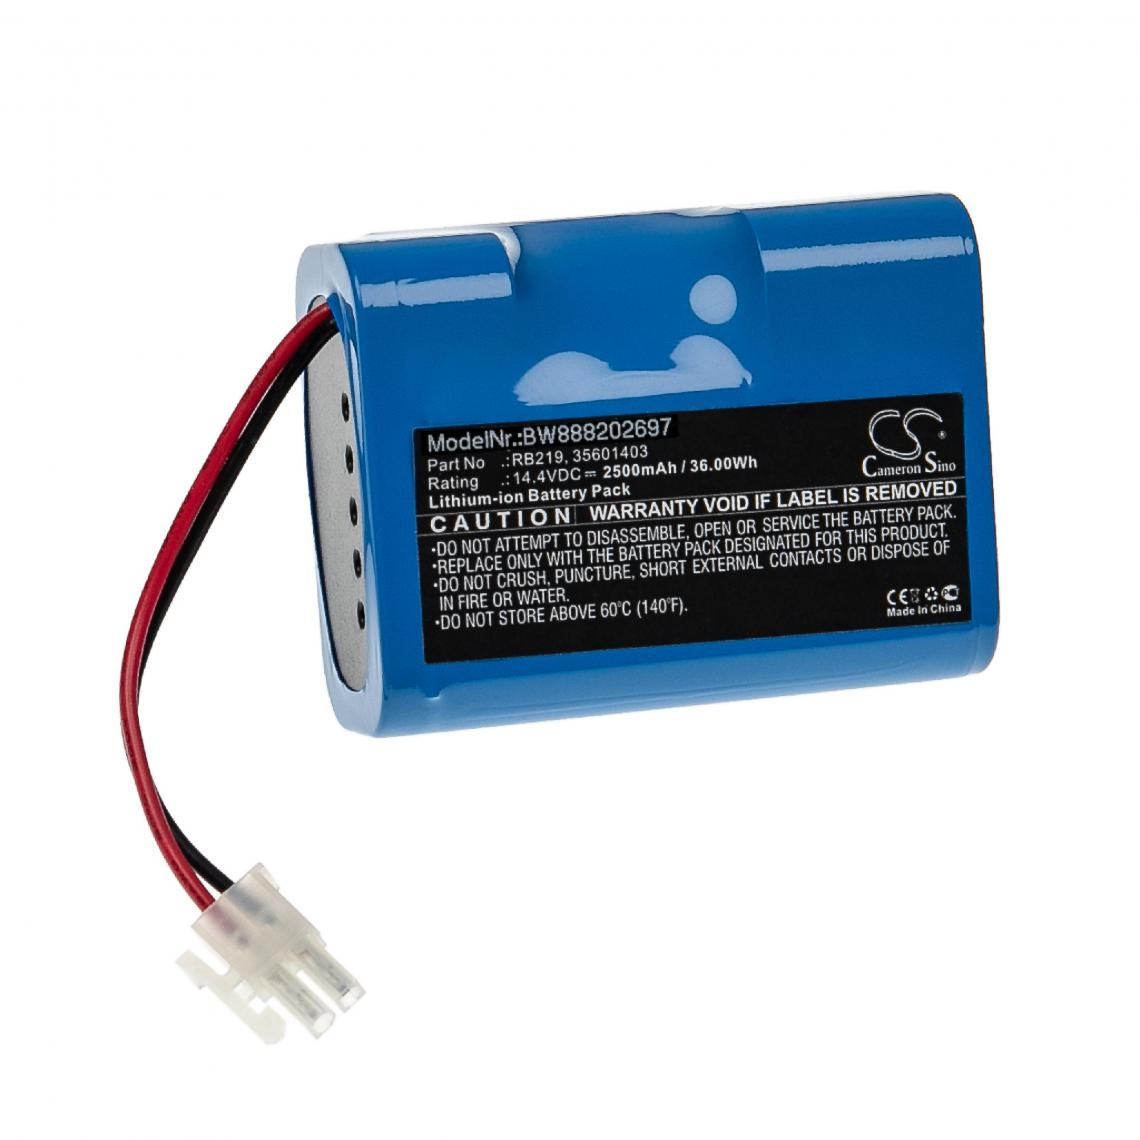 Vhbw - vhbw Batterie compatible avec Hoover RBC031B011, RBC040, RBC040/1011, RBC040/1019 aspirateur, robot électroménager (2500mAh, 14,4V, Li-ion) - Accessoire entretien des sols